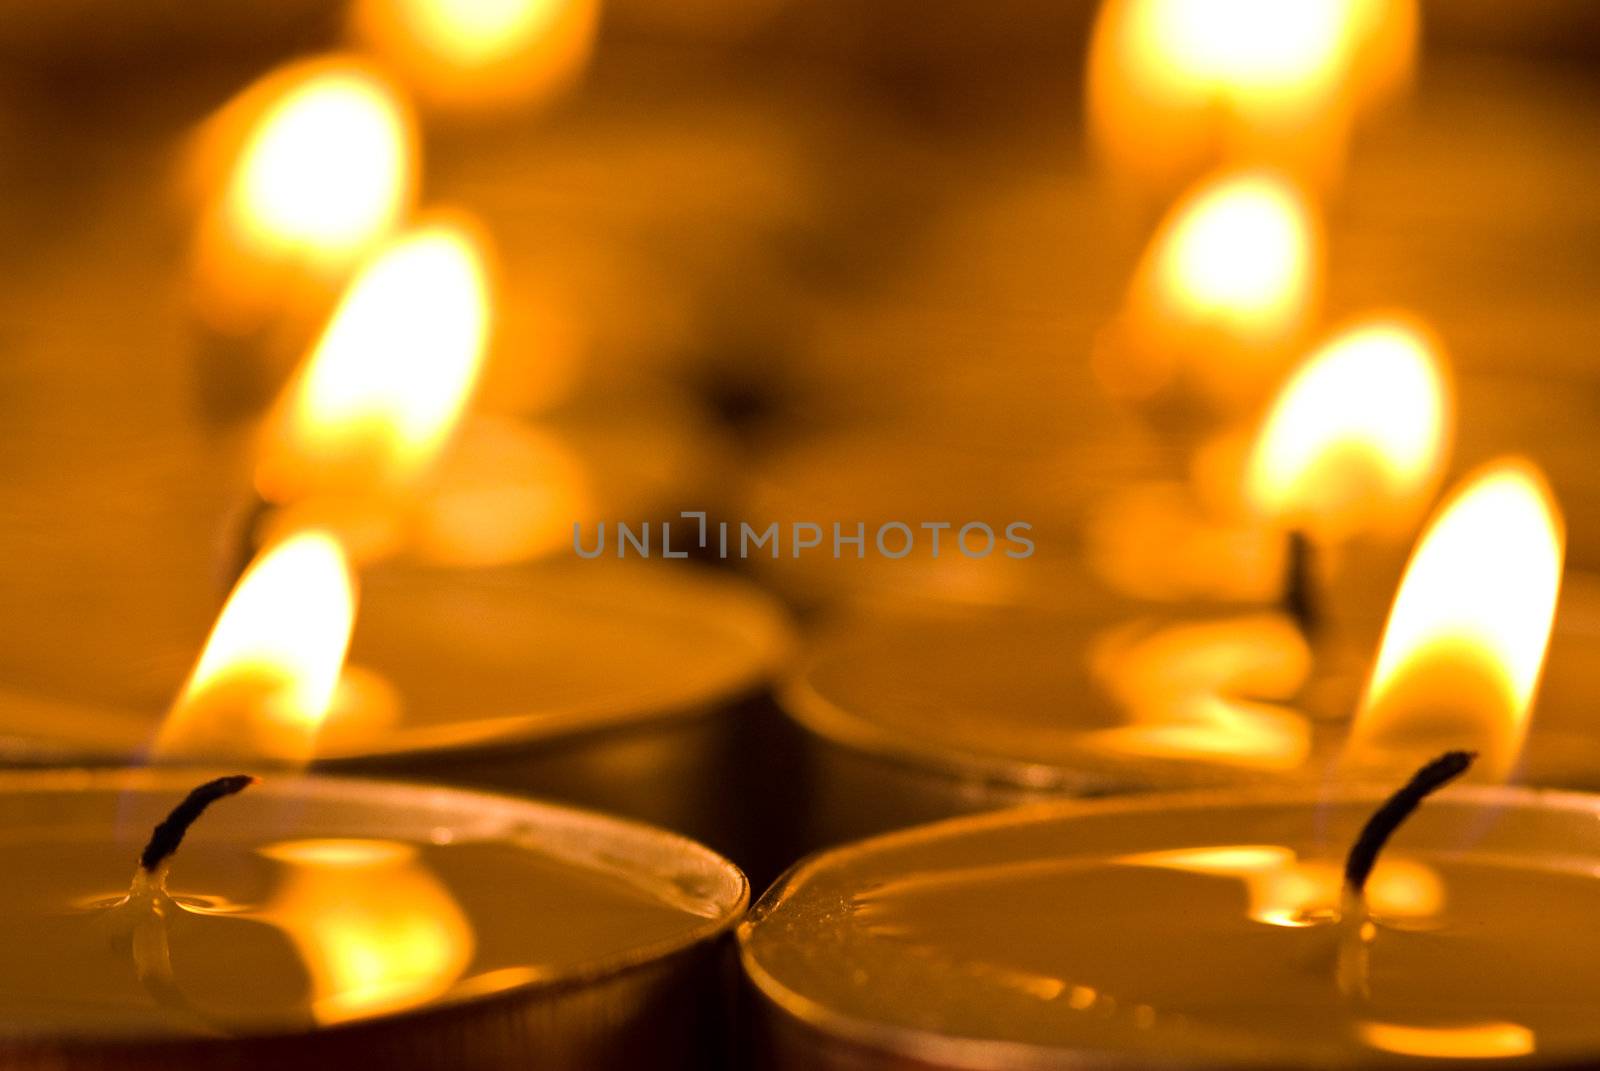 Golden warm candles by pmisak